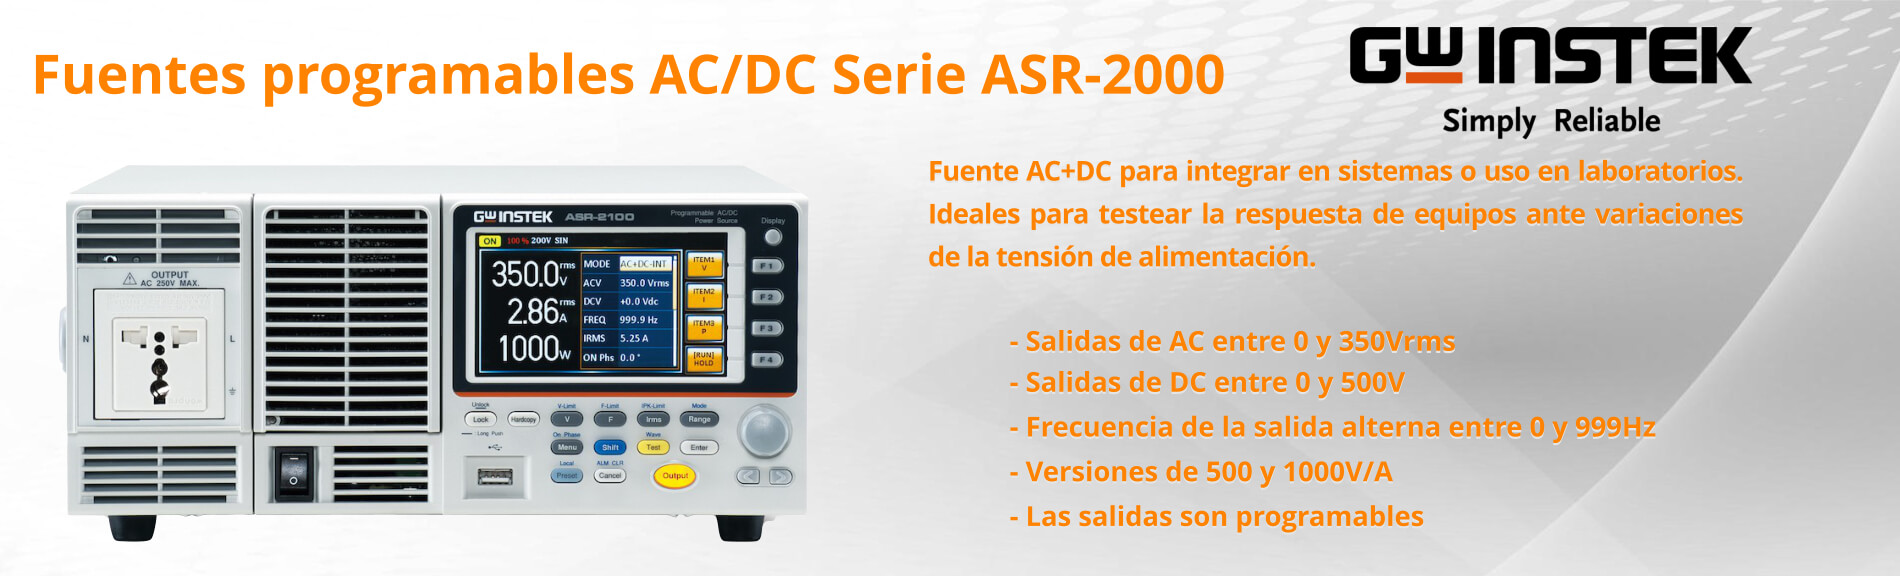 Fuentes programables AC/DC Serie ASR-2000